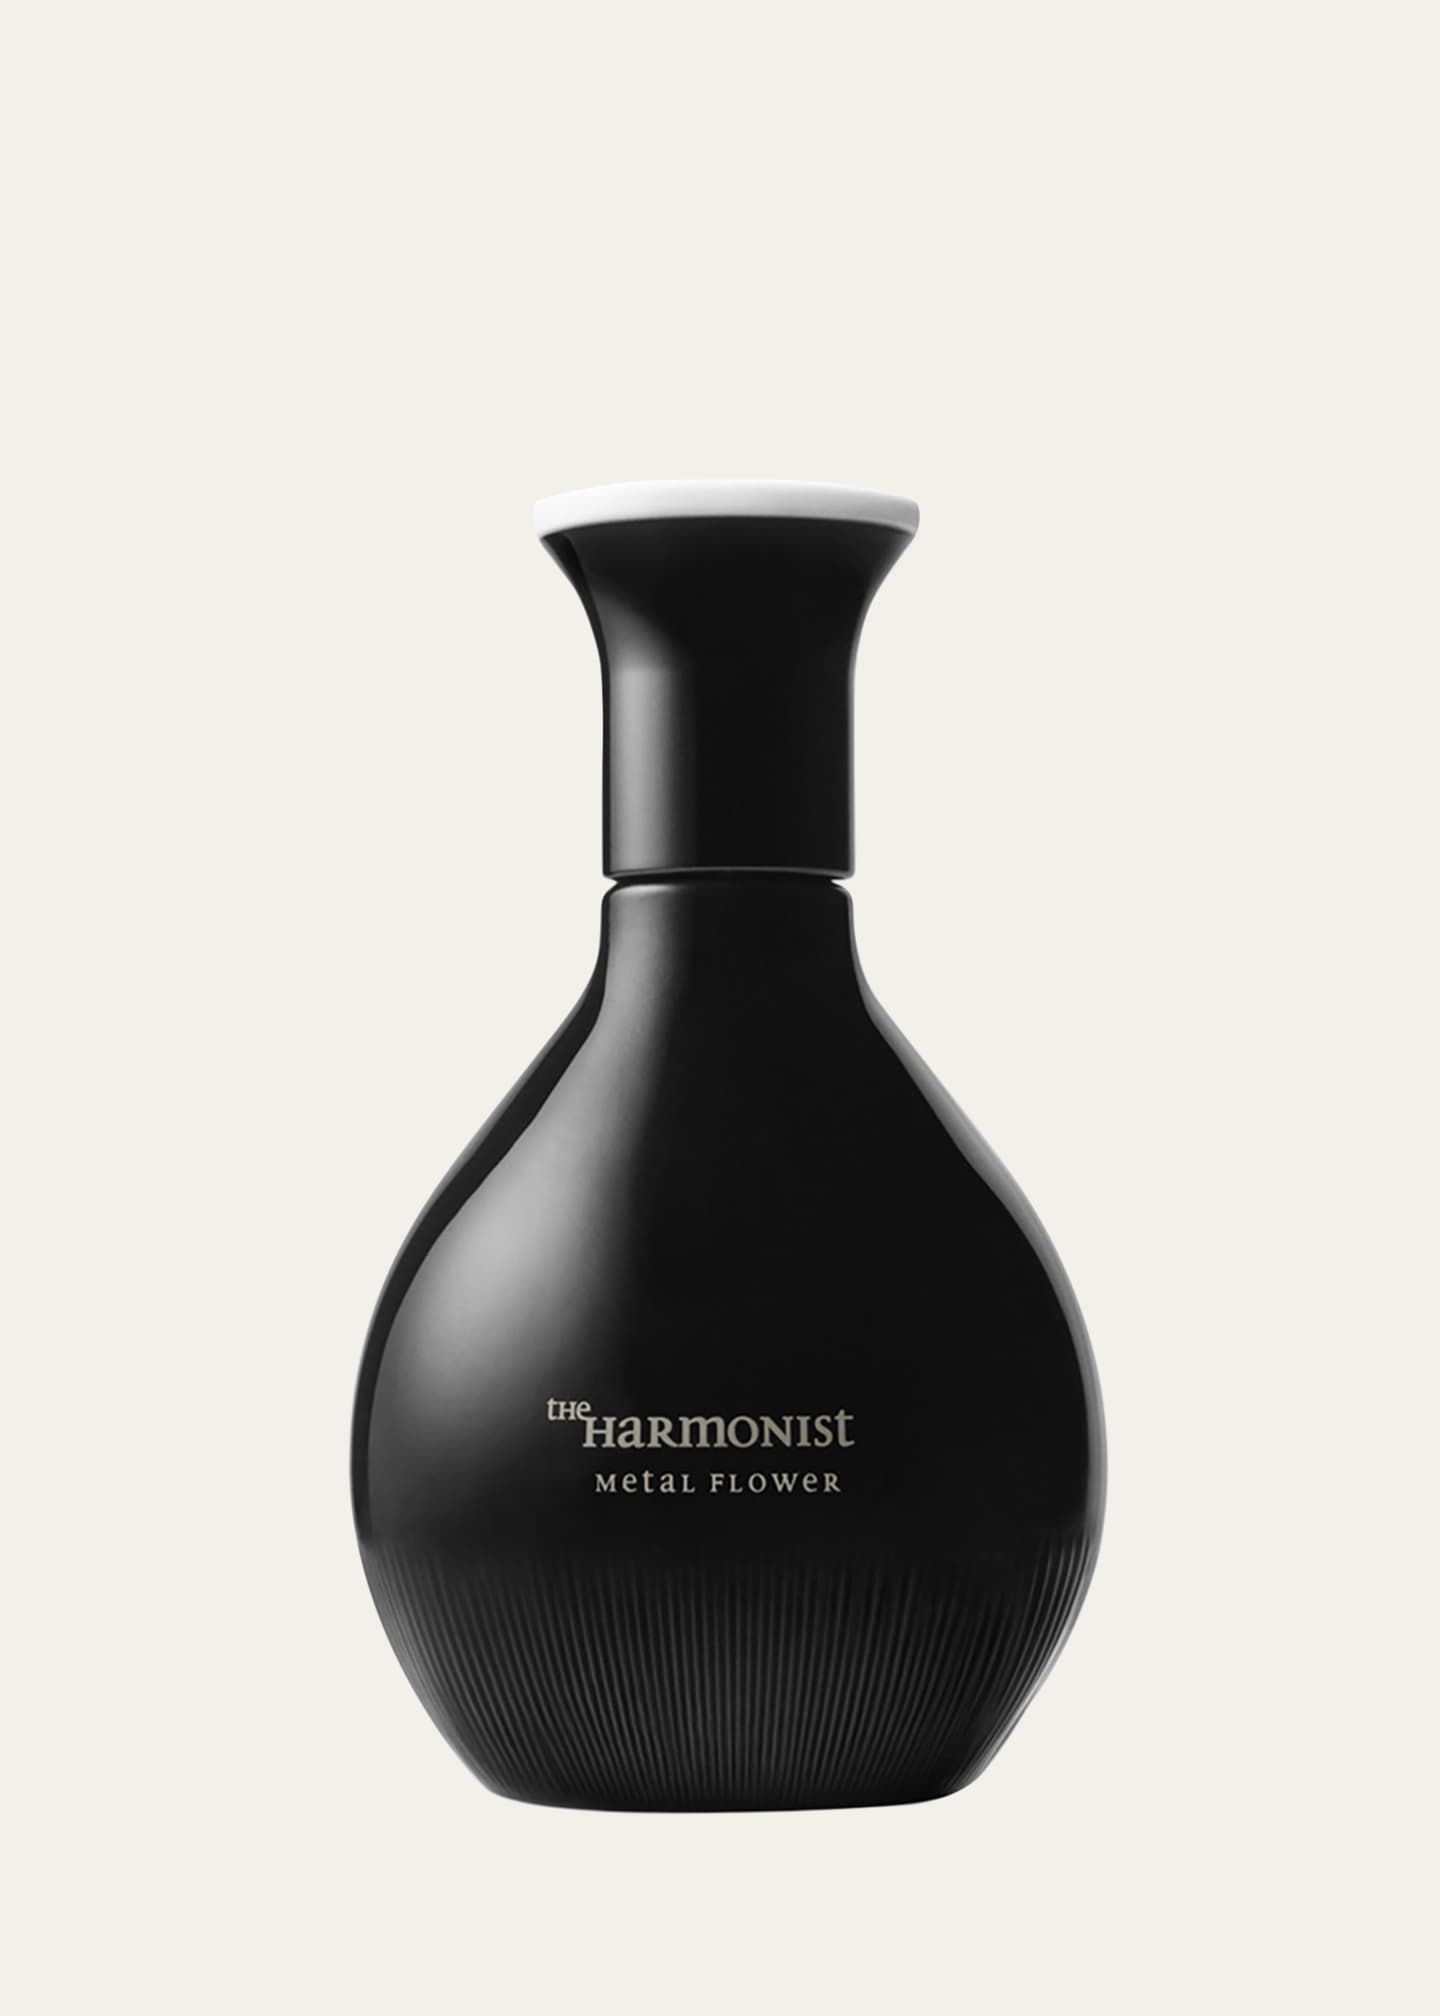 The Harmonist 1.7 oz. Metal Flower Parfum Image 1 of 2